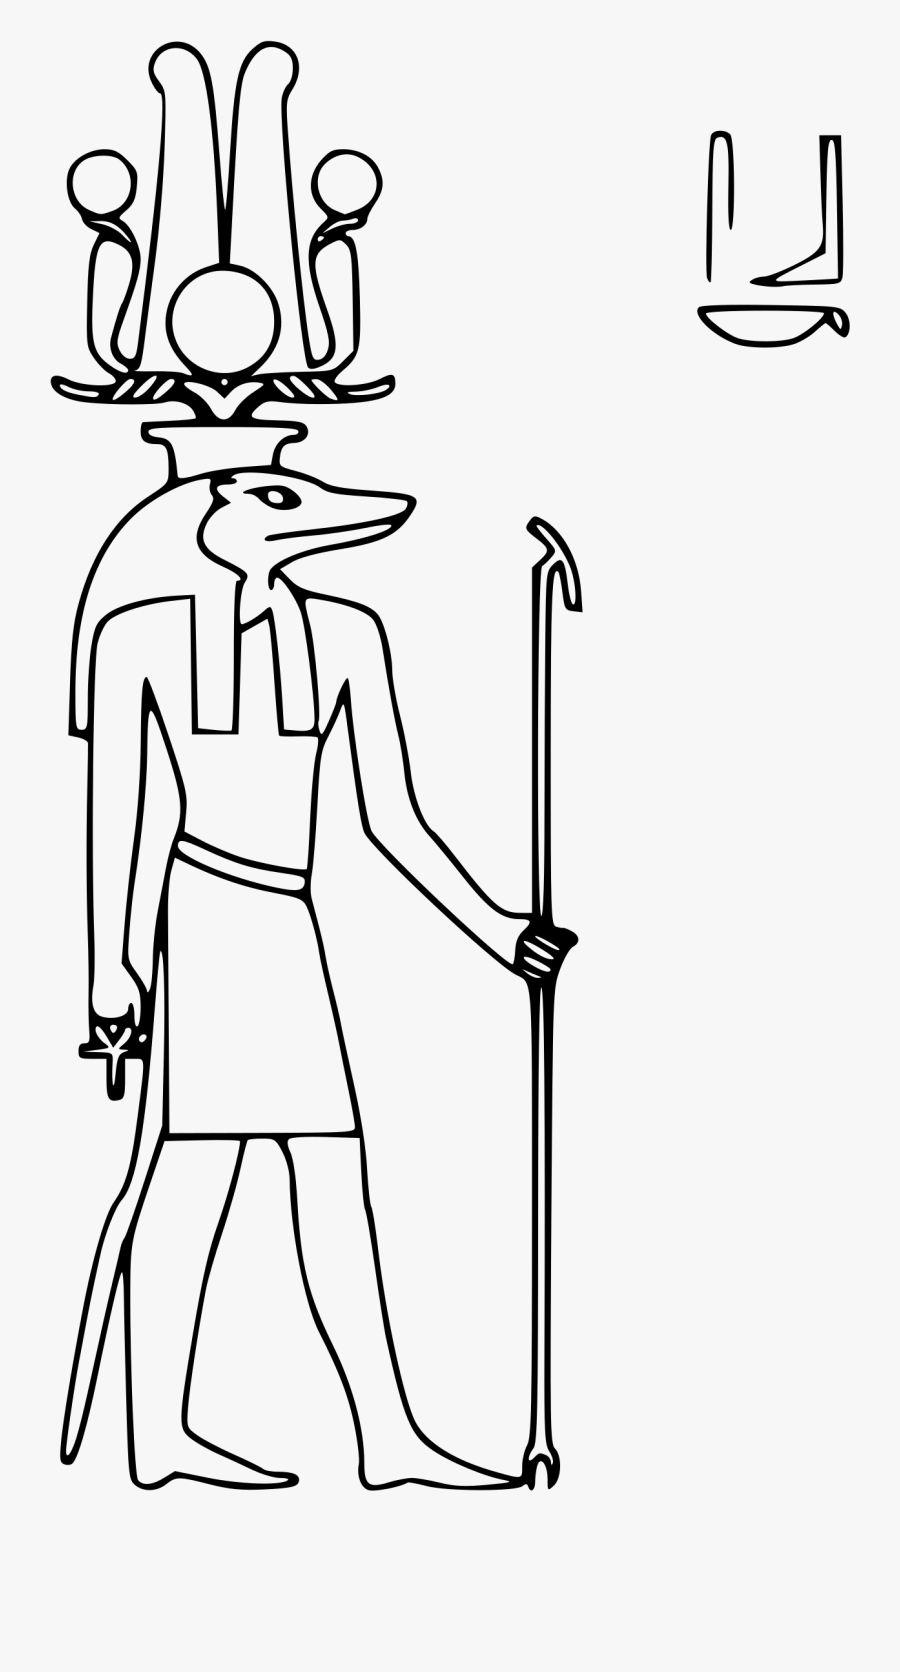 Sobek Big Image Png - Sobek Egyptian God Coloring, Transparent Clipart